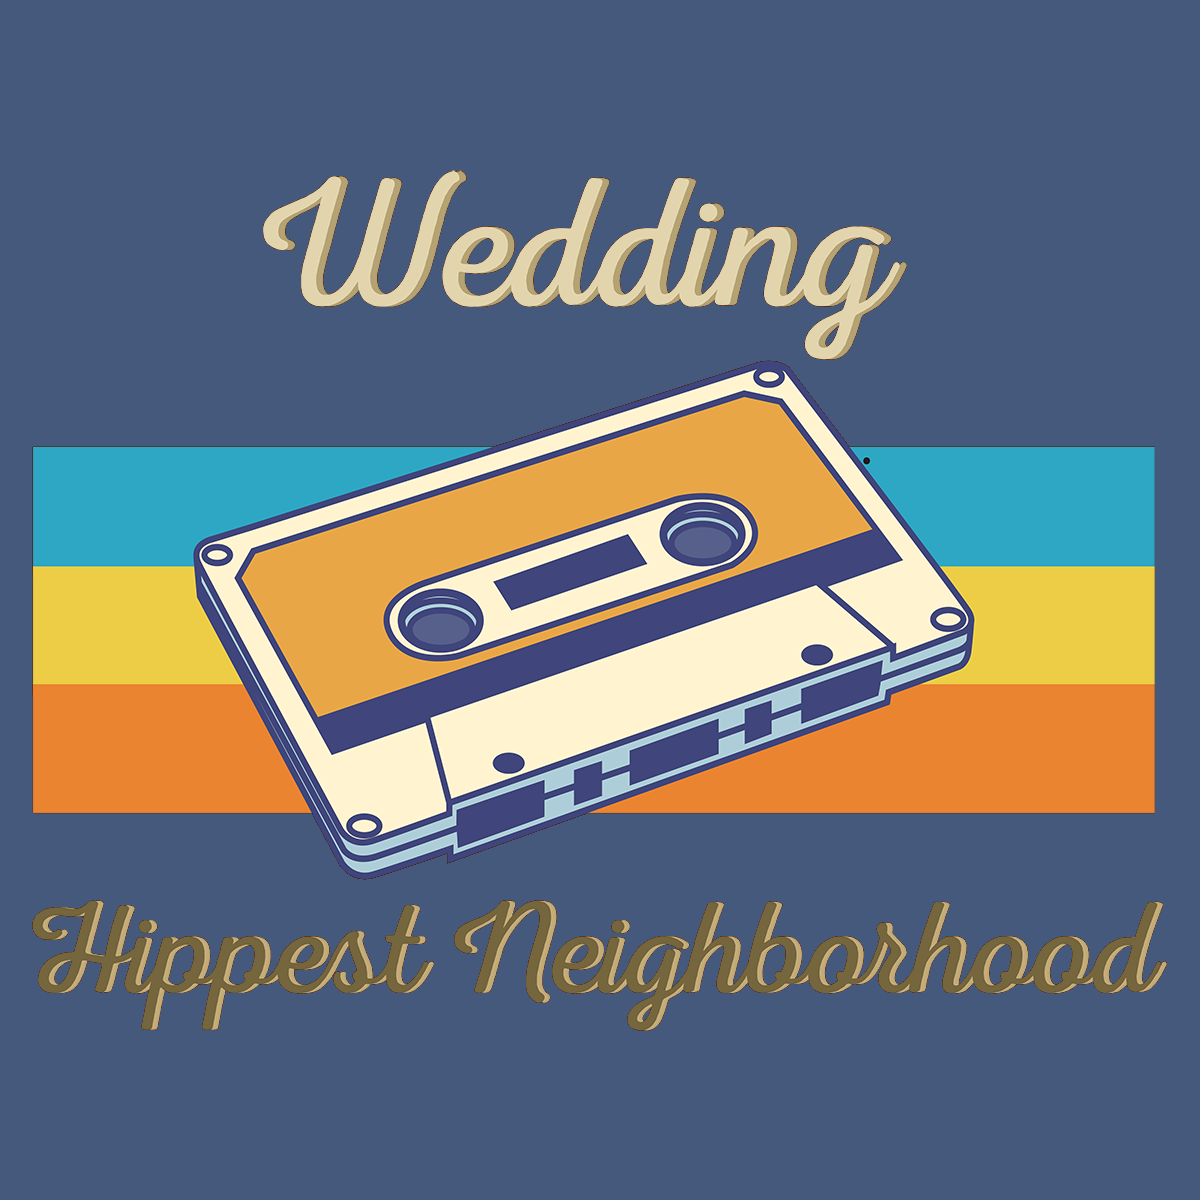 Wedding Hippest Neighborhood